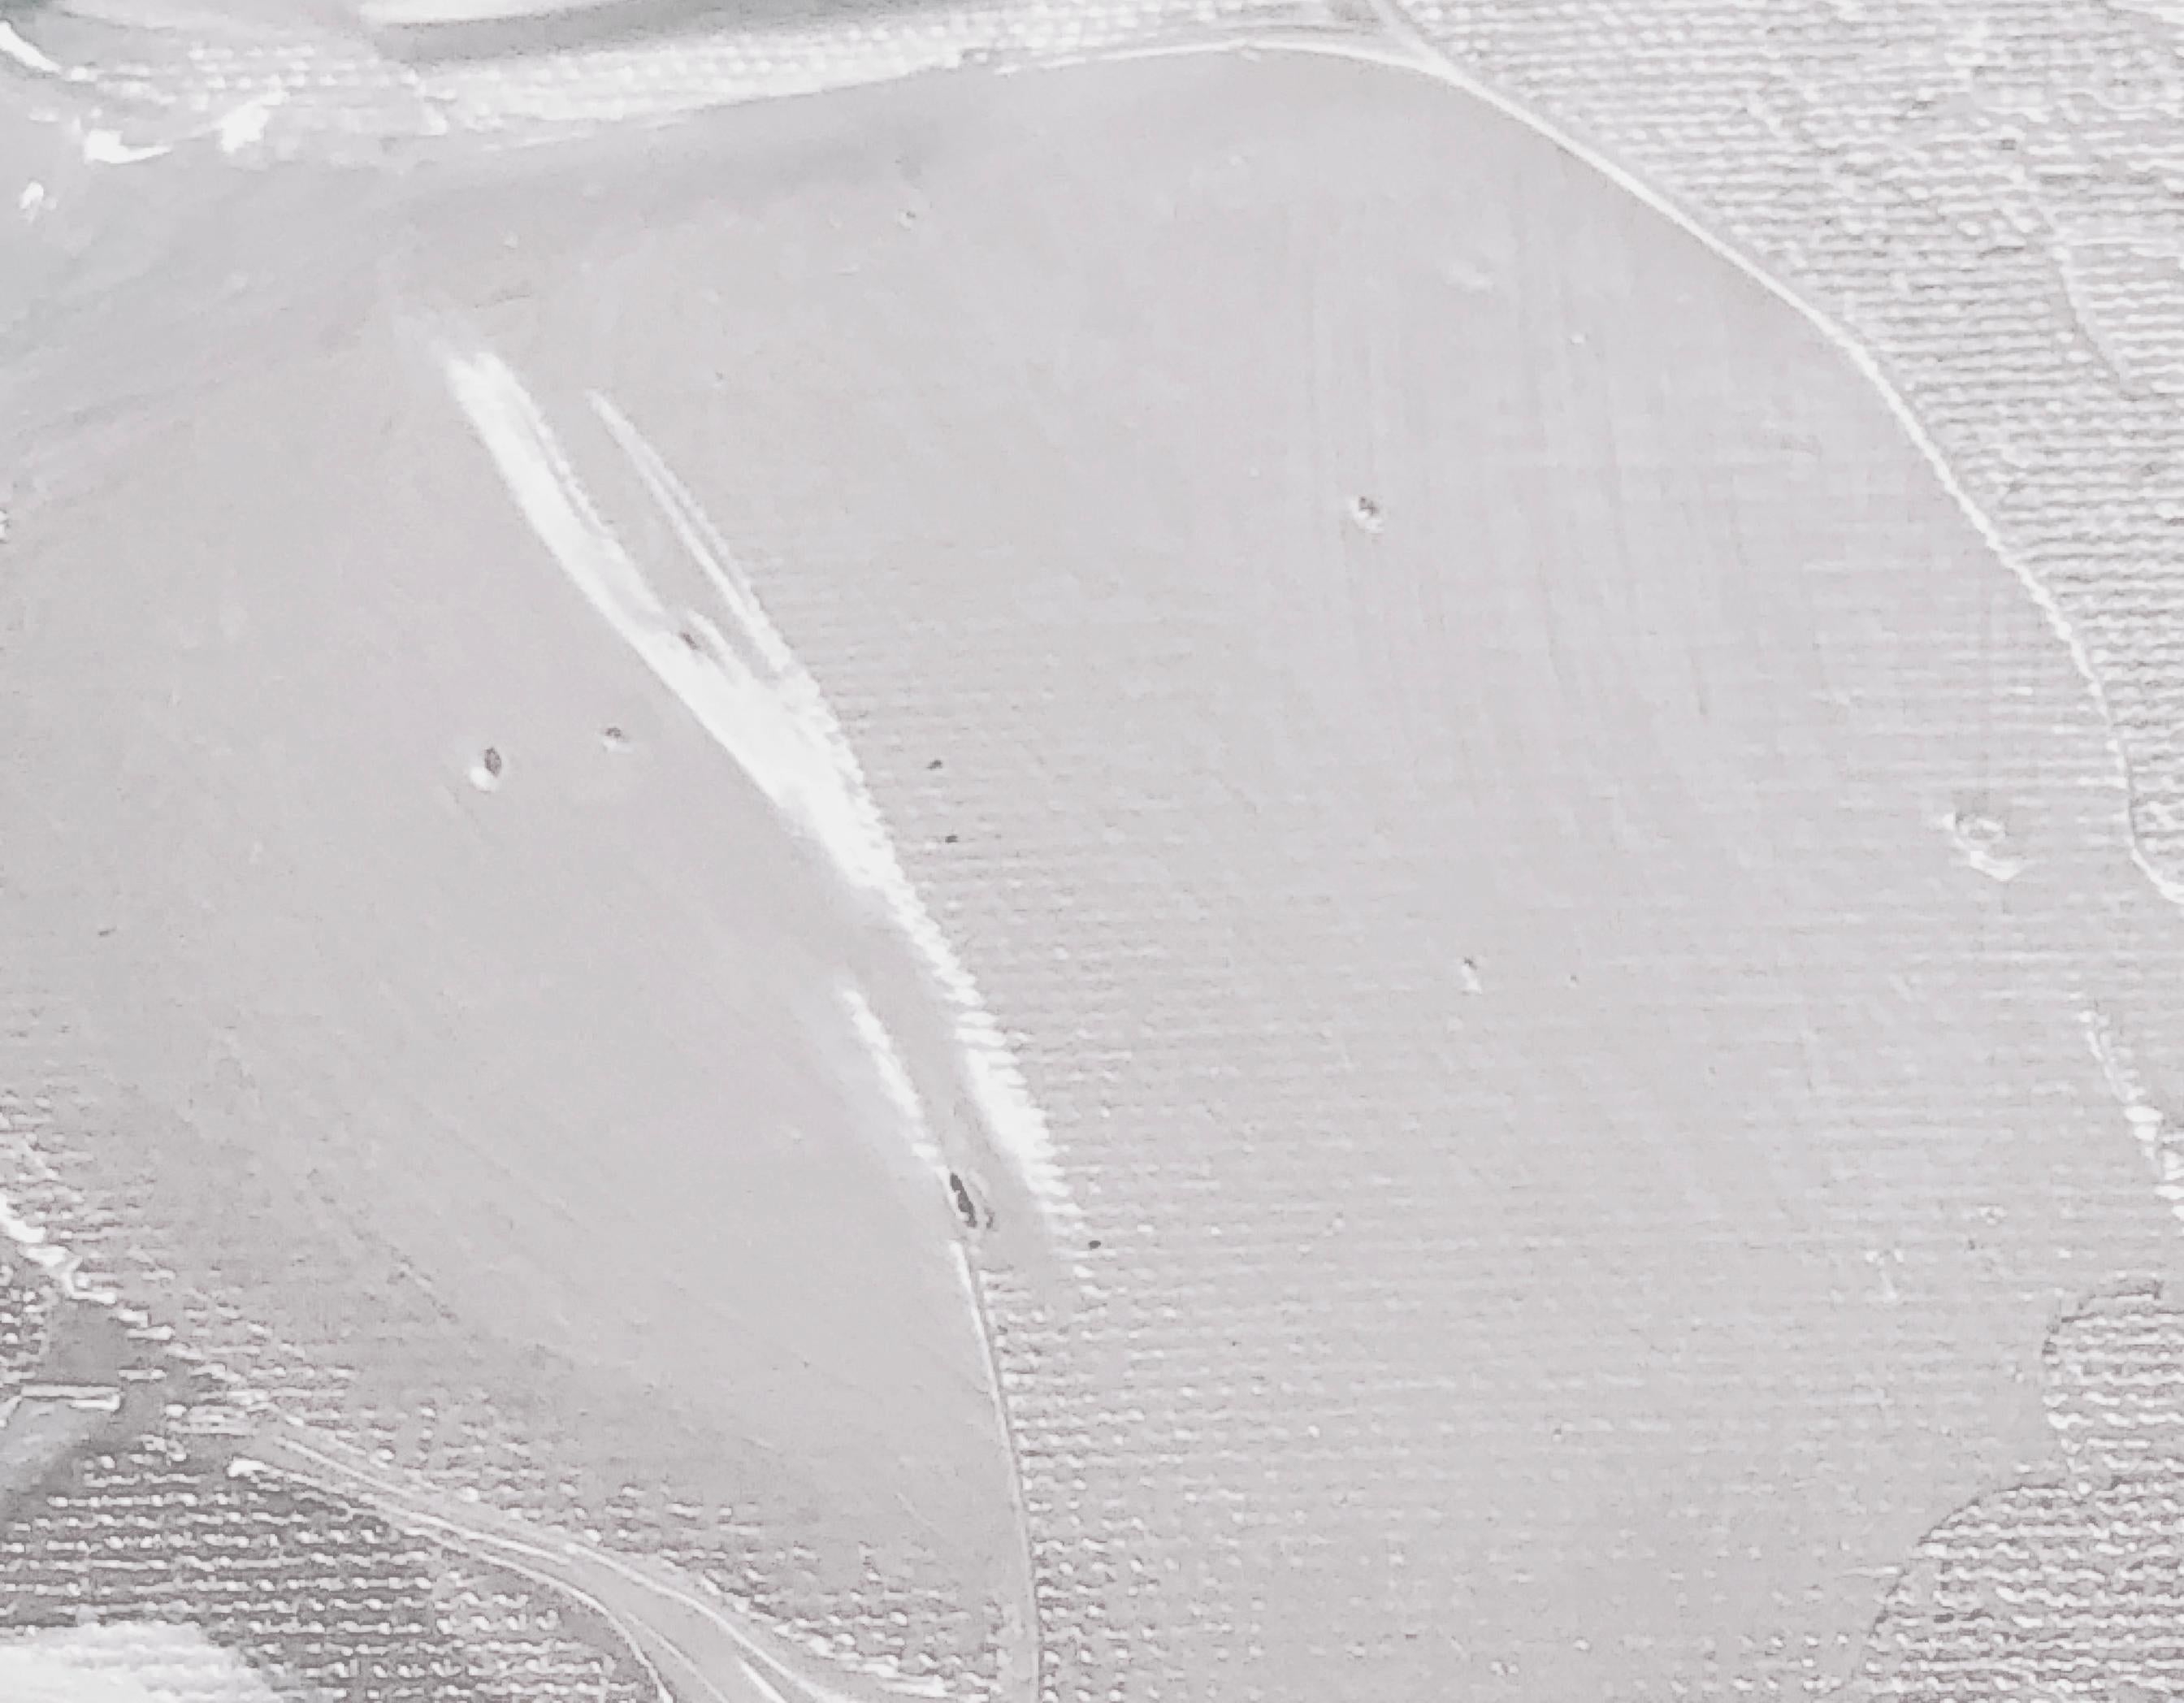 Rosa Frühling florale Malerei Hand verschönert Giclee auf Leinwand 40H X 60W

Hochmoderne handgemalte ∽ MUSEUMSQUALITÄT ∽ AUSSTELLUNGSBEREIT Giclee-Reproduktion
Jedes Giclee in limitierter Auflage wird vom Künstler von Hand verschönert, was es zu